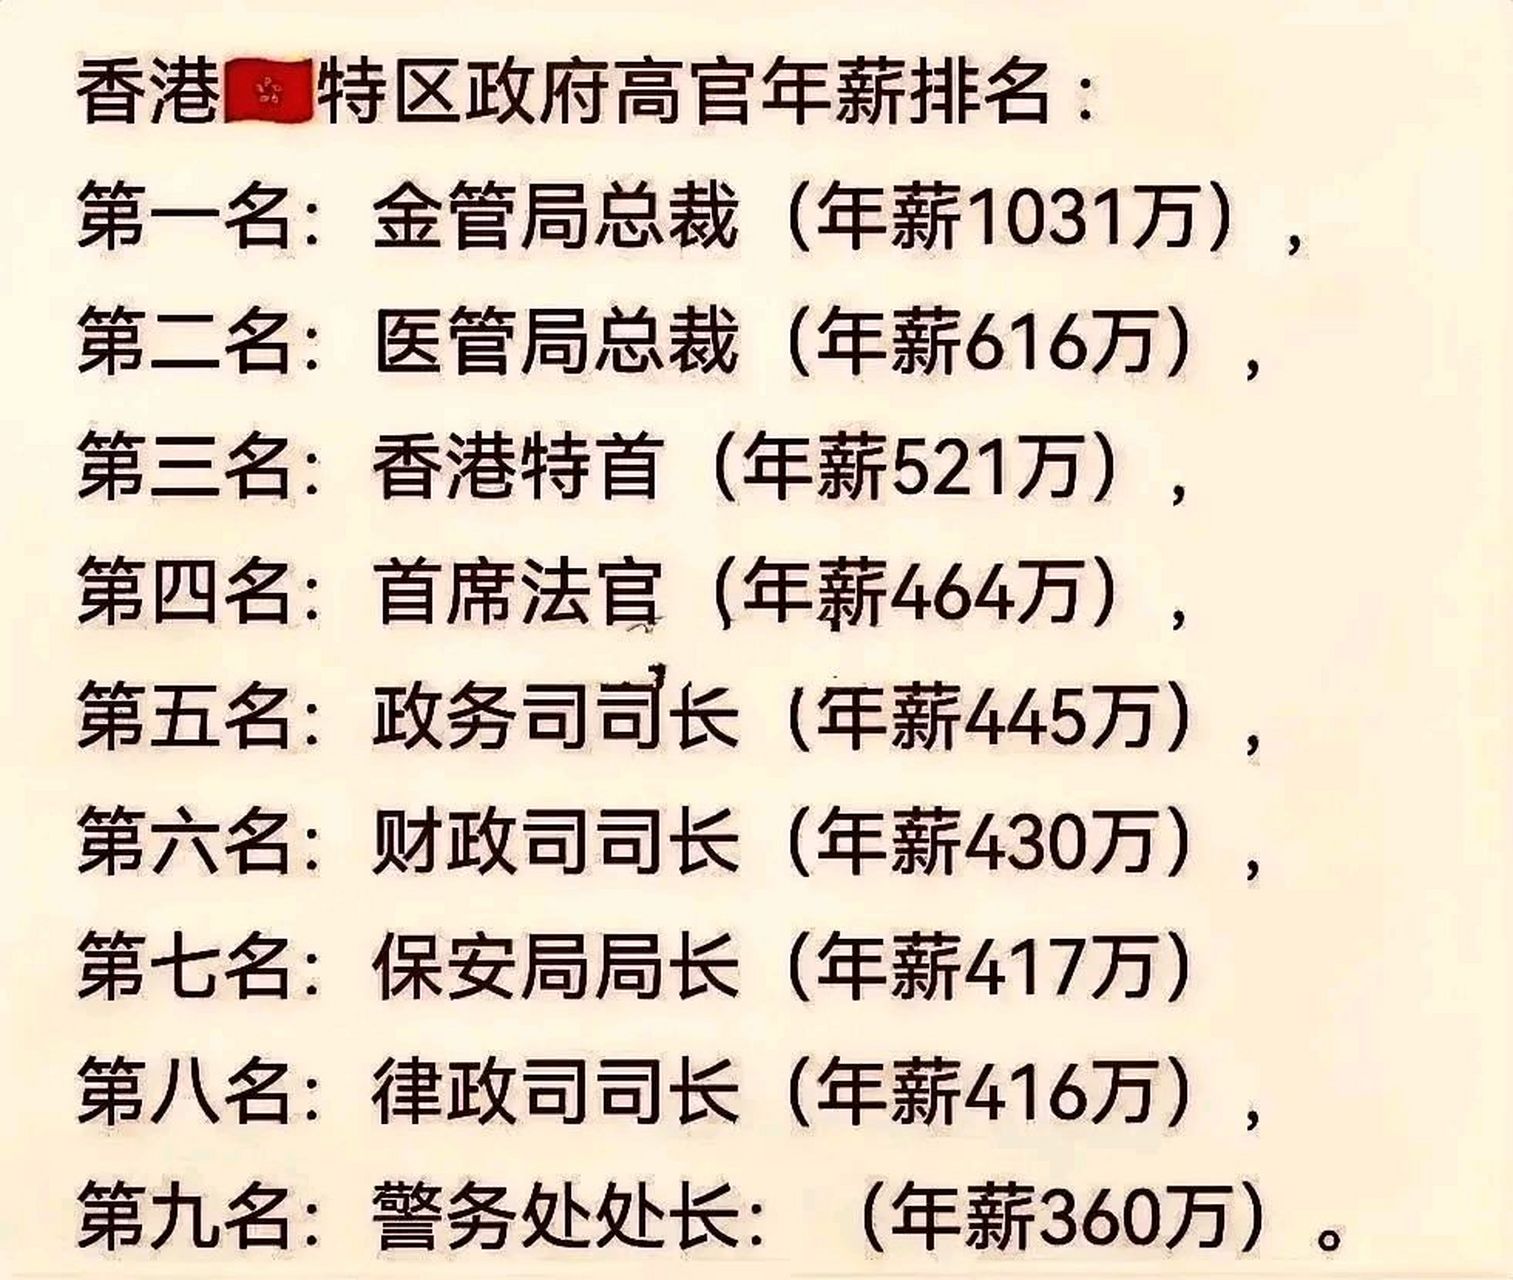 香港特首工资居然不是最高的,才排第三!